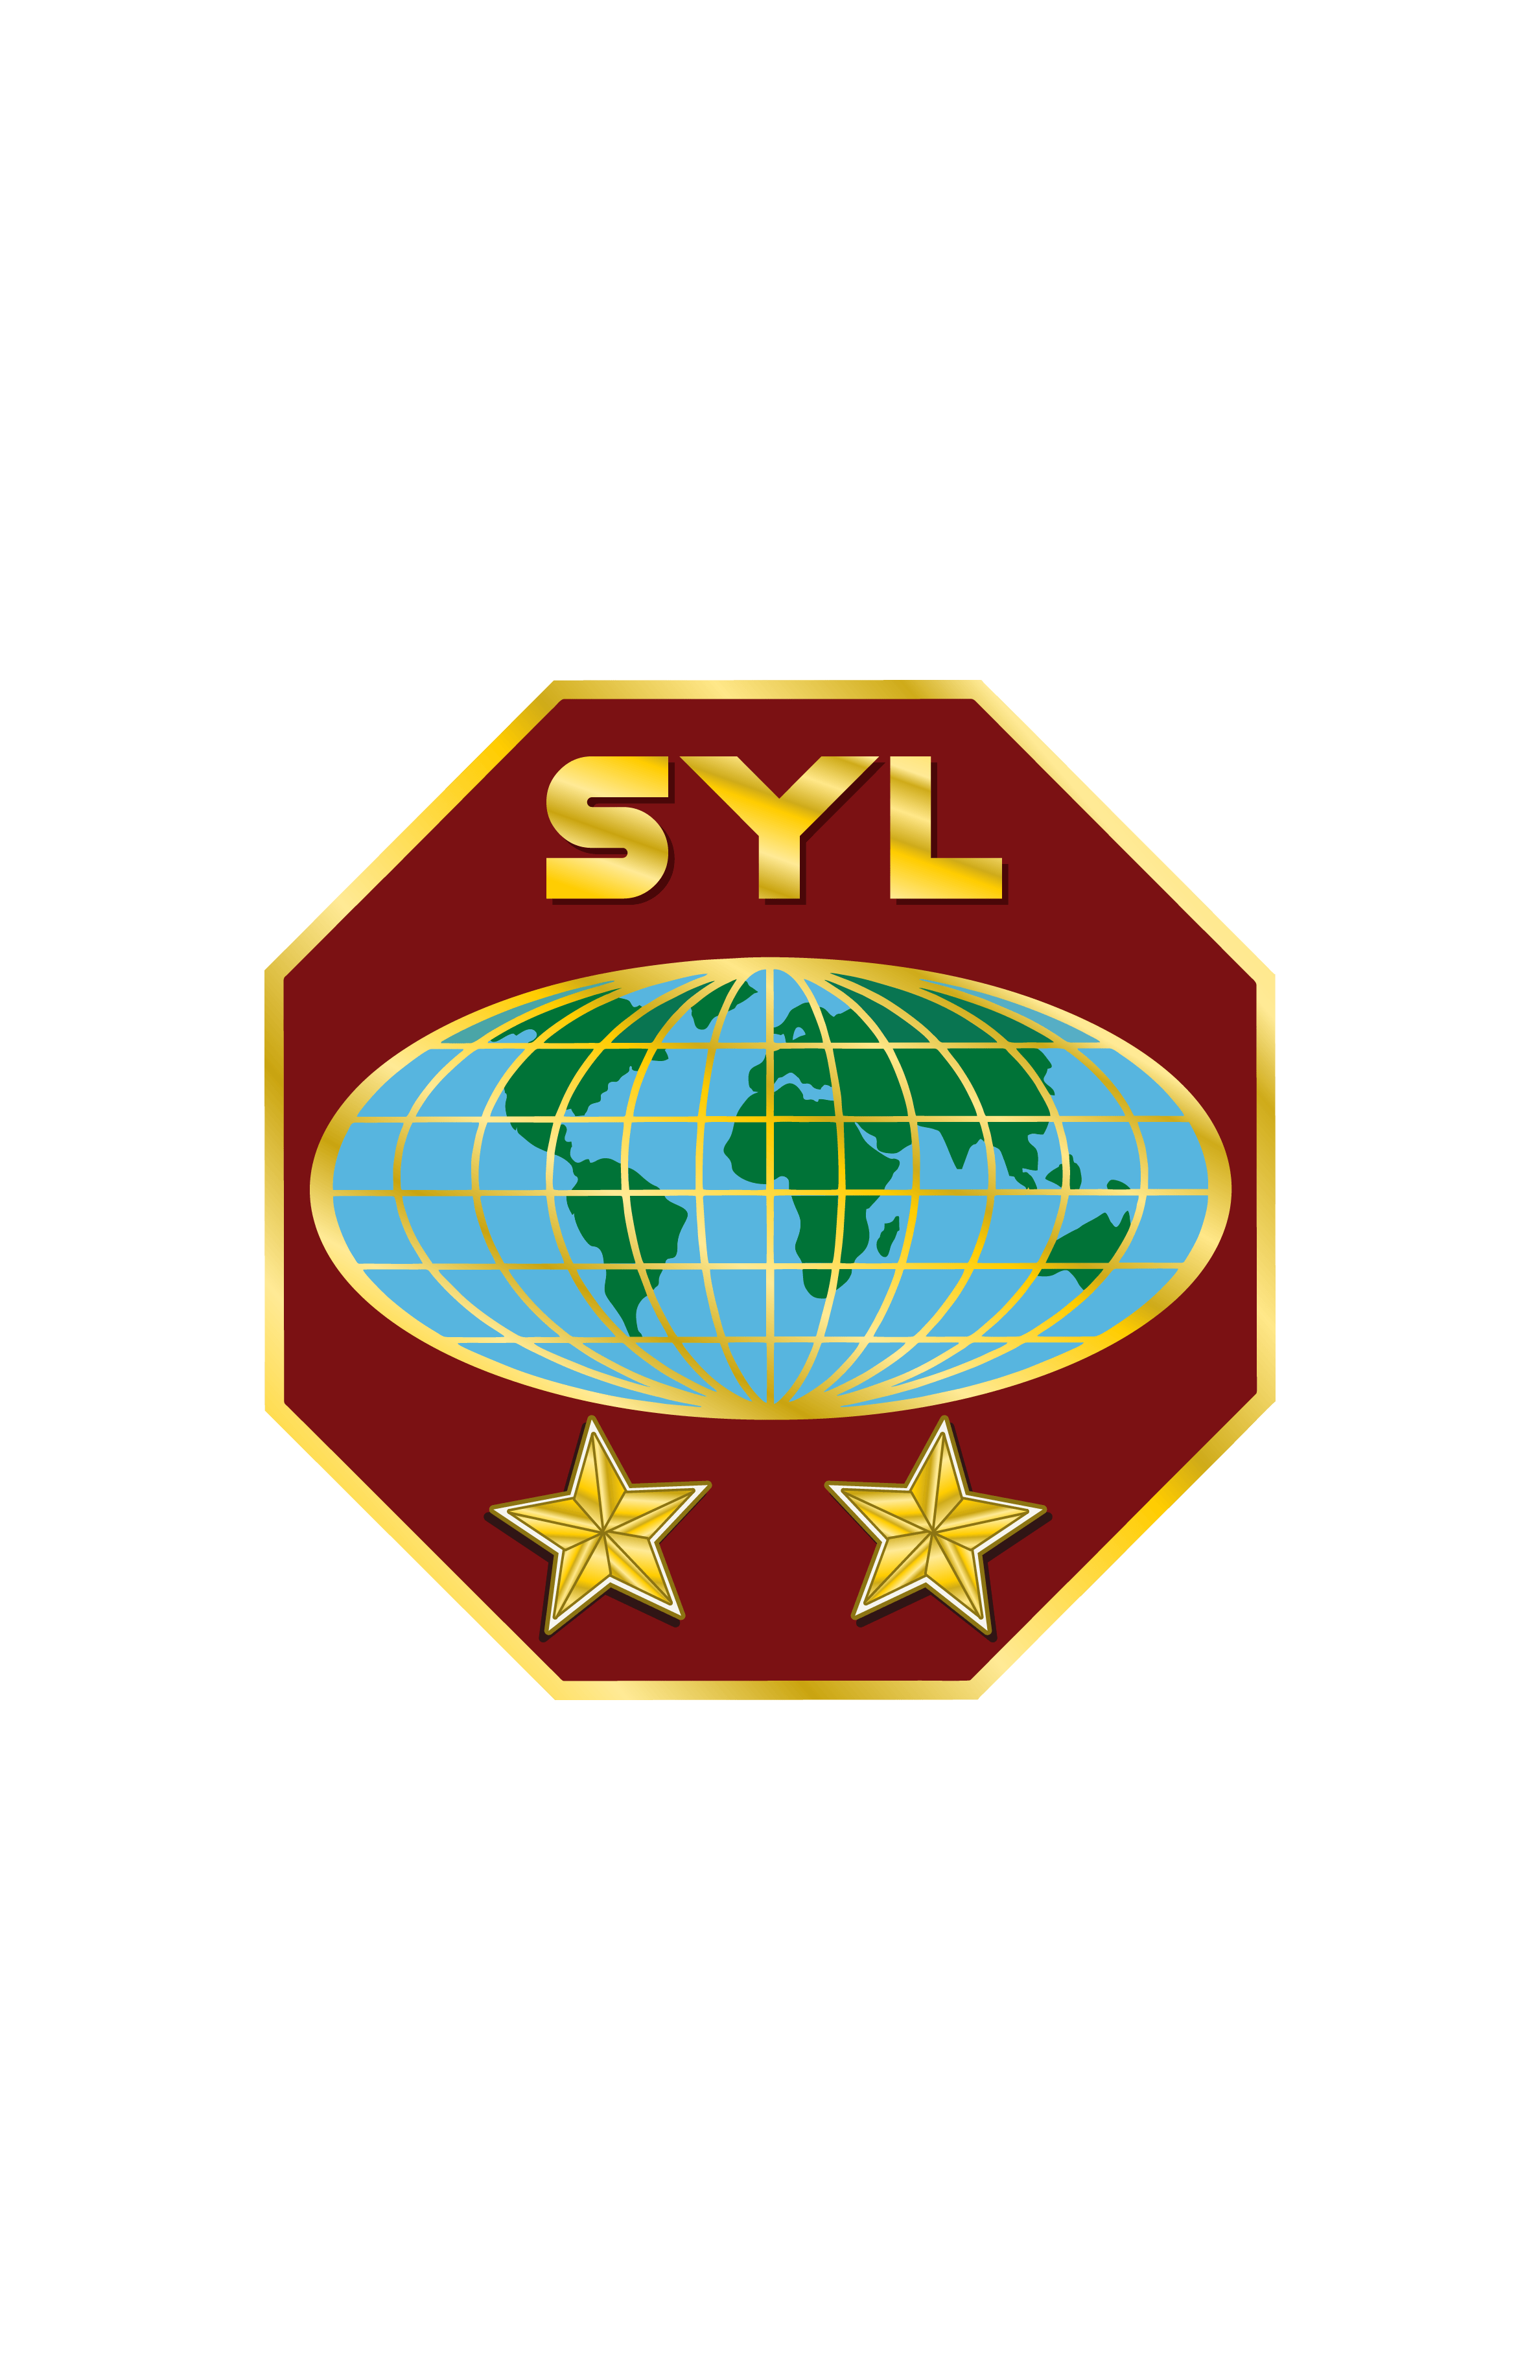 Syl Logo - Monrovia Central